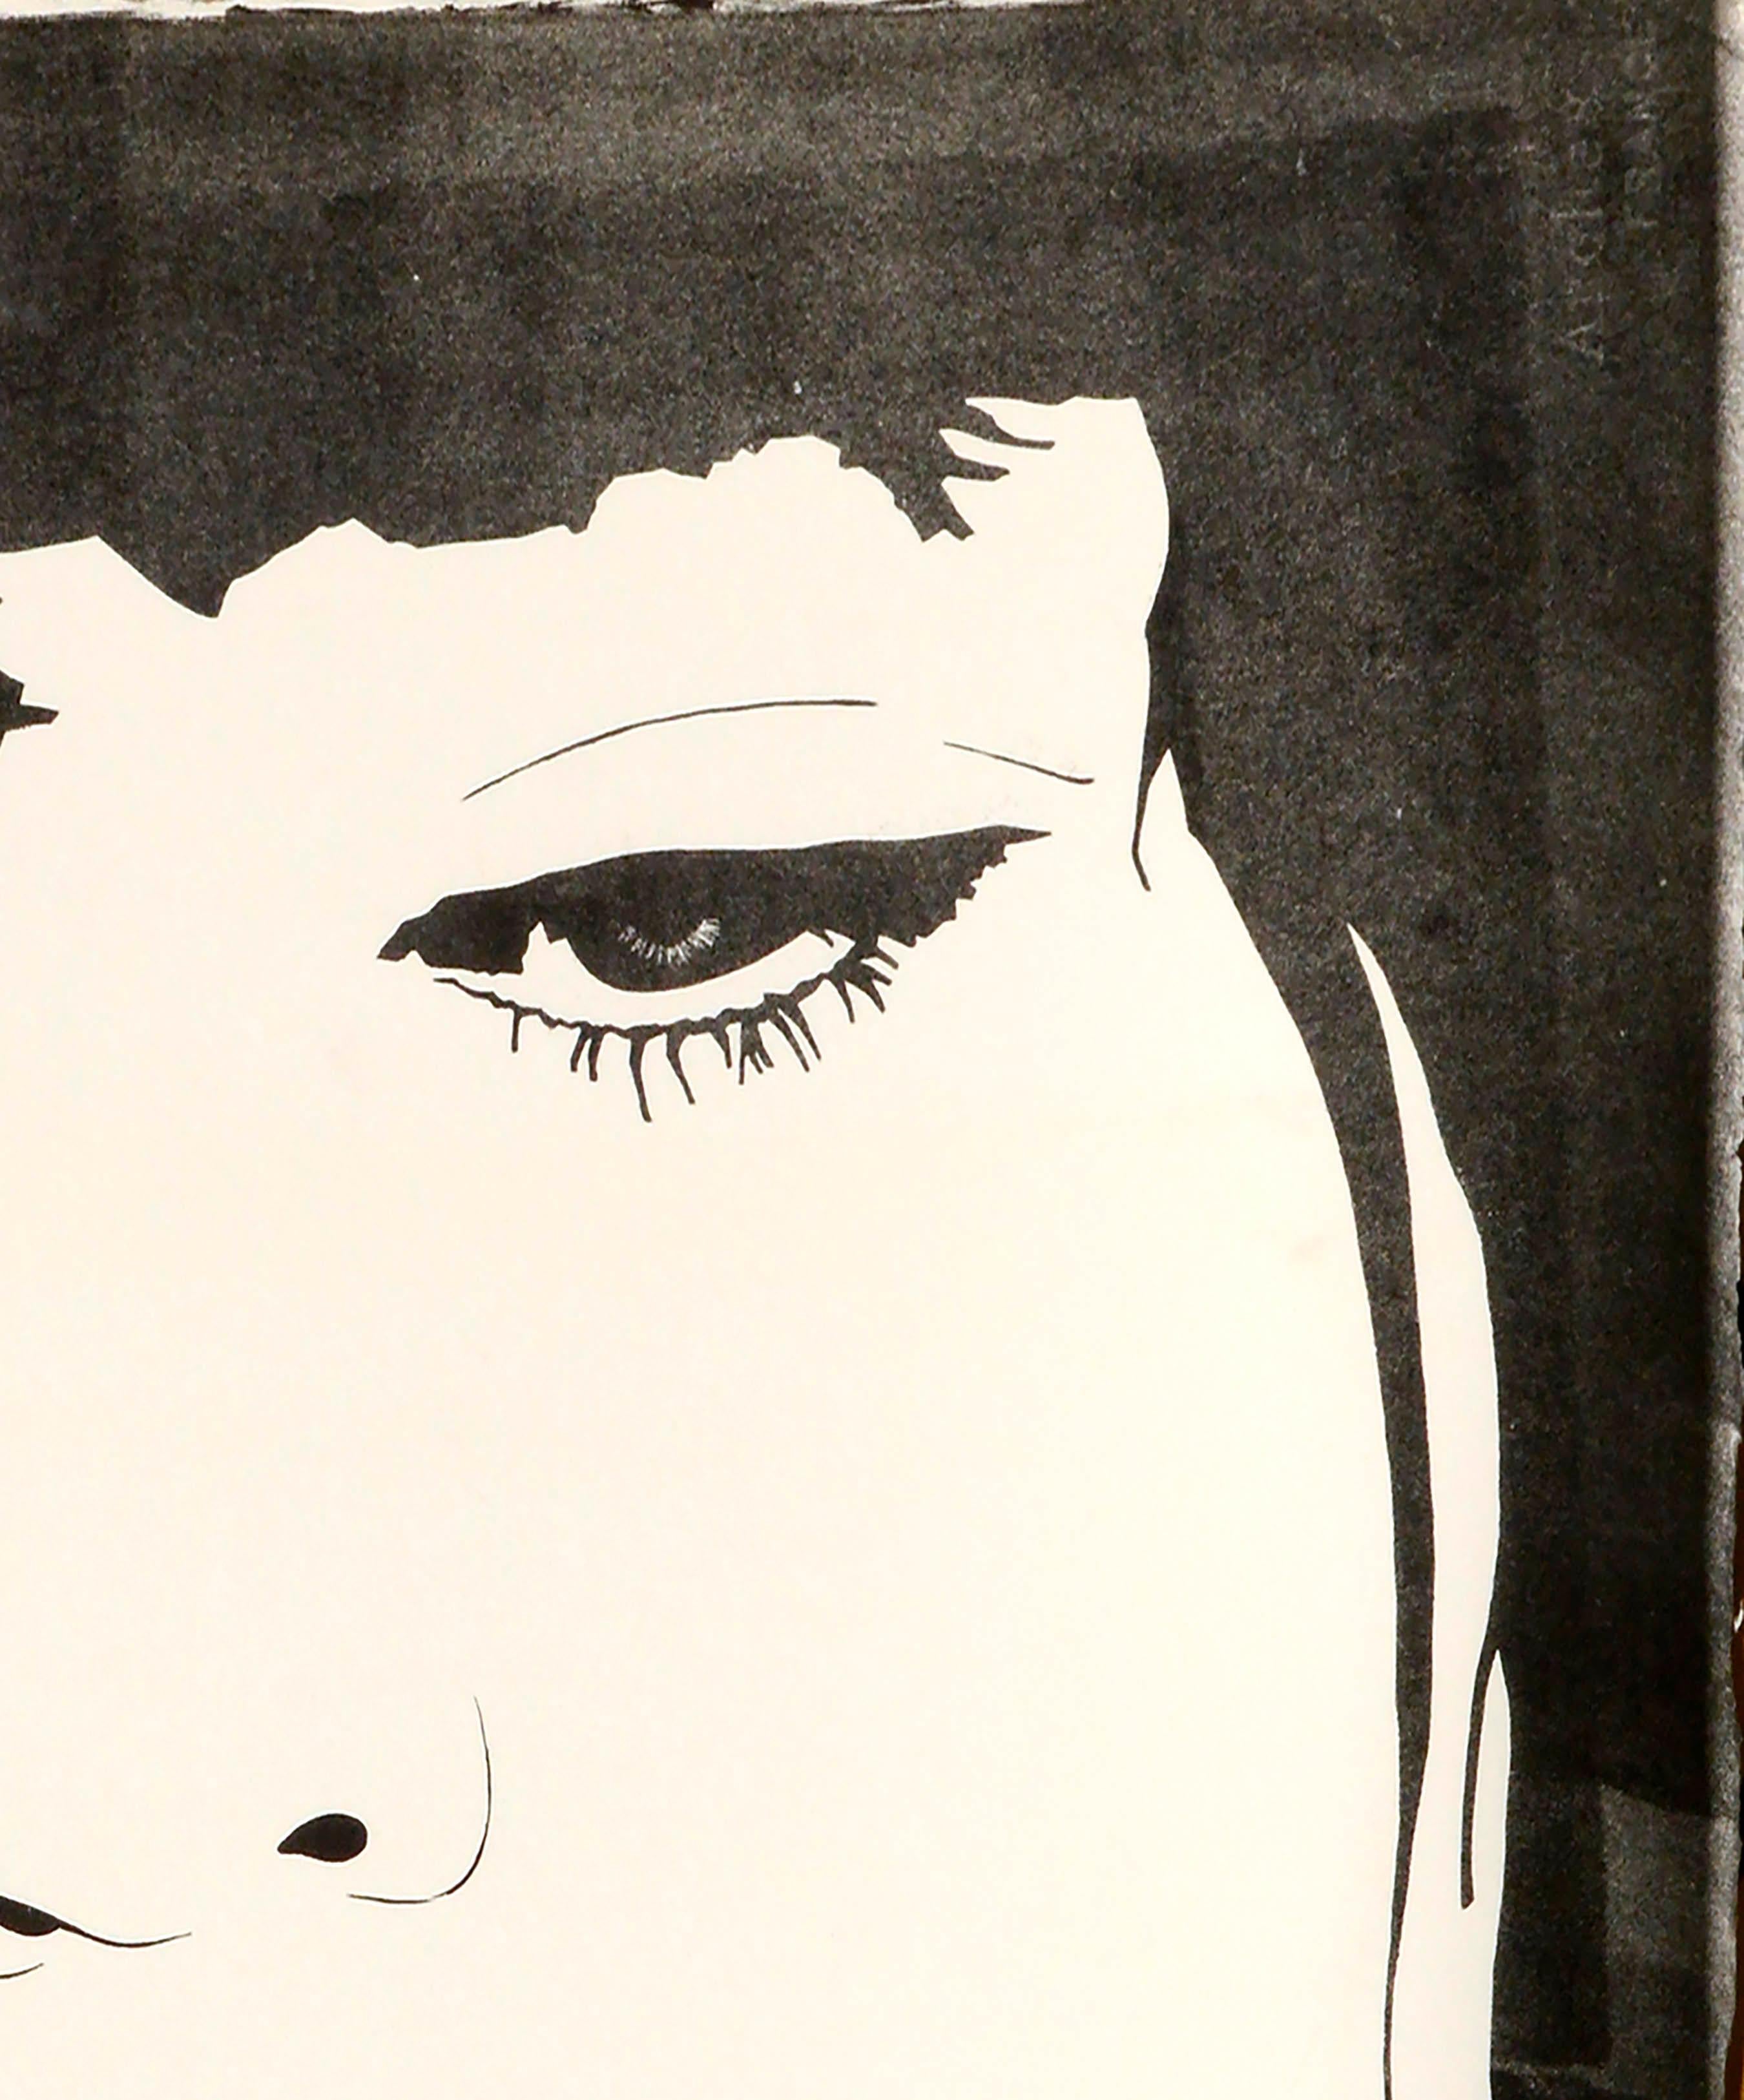 Porträt einer Frau im Pop-Art-Stil mit Ähnlichkeit zu Kate Moss von Marc Foster Grant (Amerikaner, 20. Jahrhundert). Unsigniert, aus einer Sammlung seiner Werke. Ungerahmt.

Marc Foster Grant (Amerikaner, geb. 1947) ist ein Künstler aus San Diego,